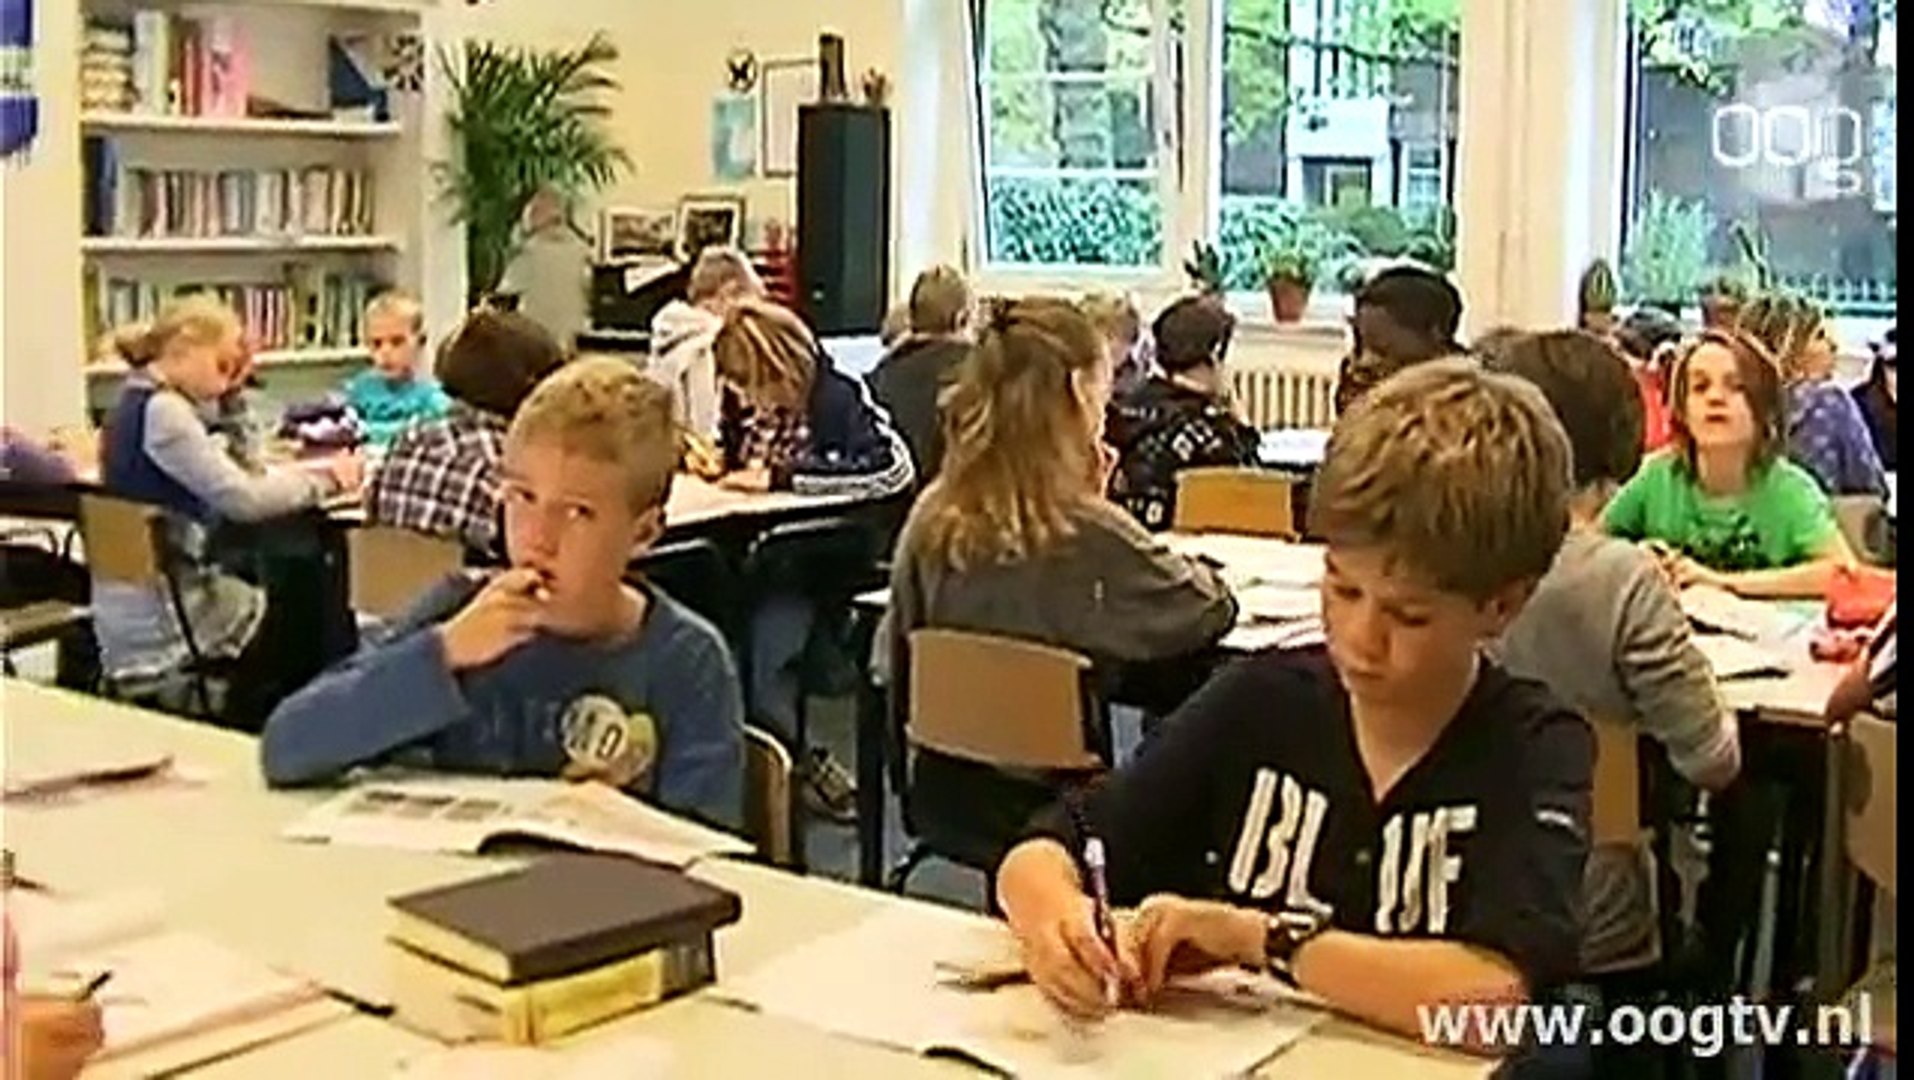 Sexuele voorlichting 1991 бельгия. Sexuele voorlichting Бельгия. Education for boys and girls(1991). Sexuele voorlichting (1991 Бельгия).vk.